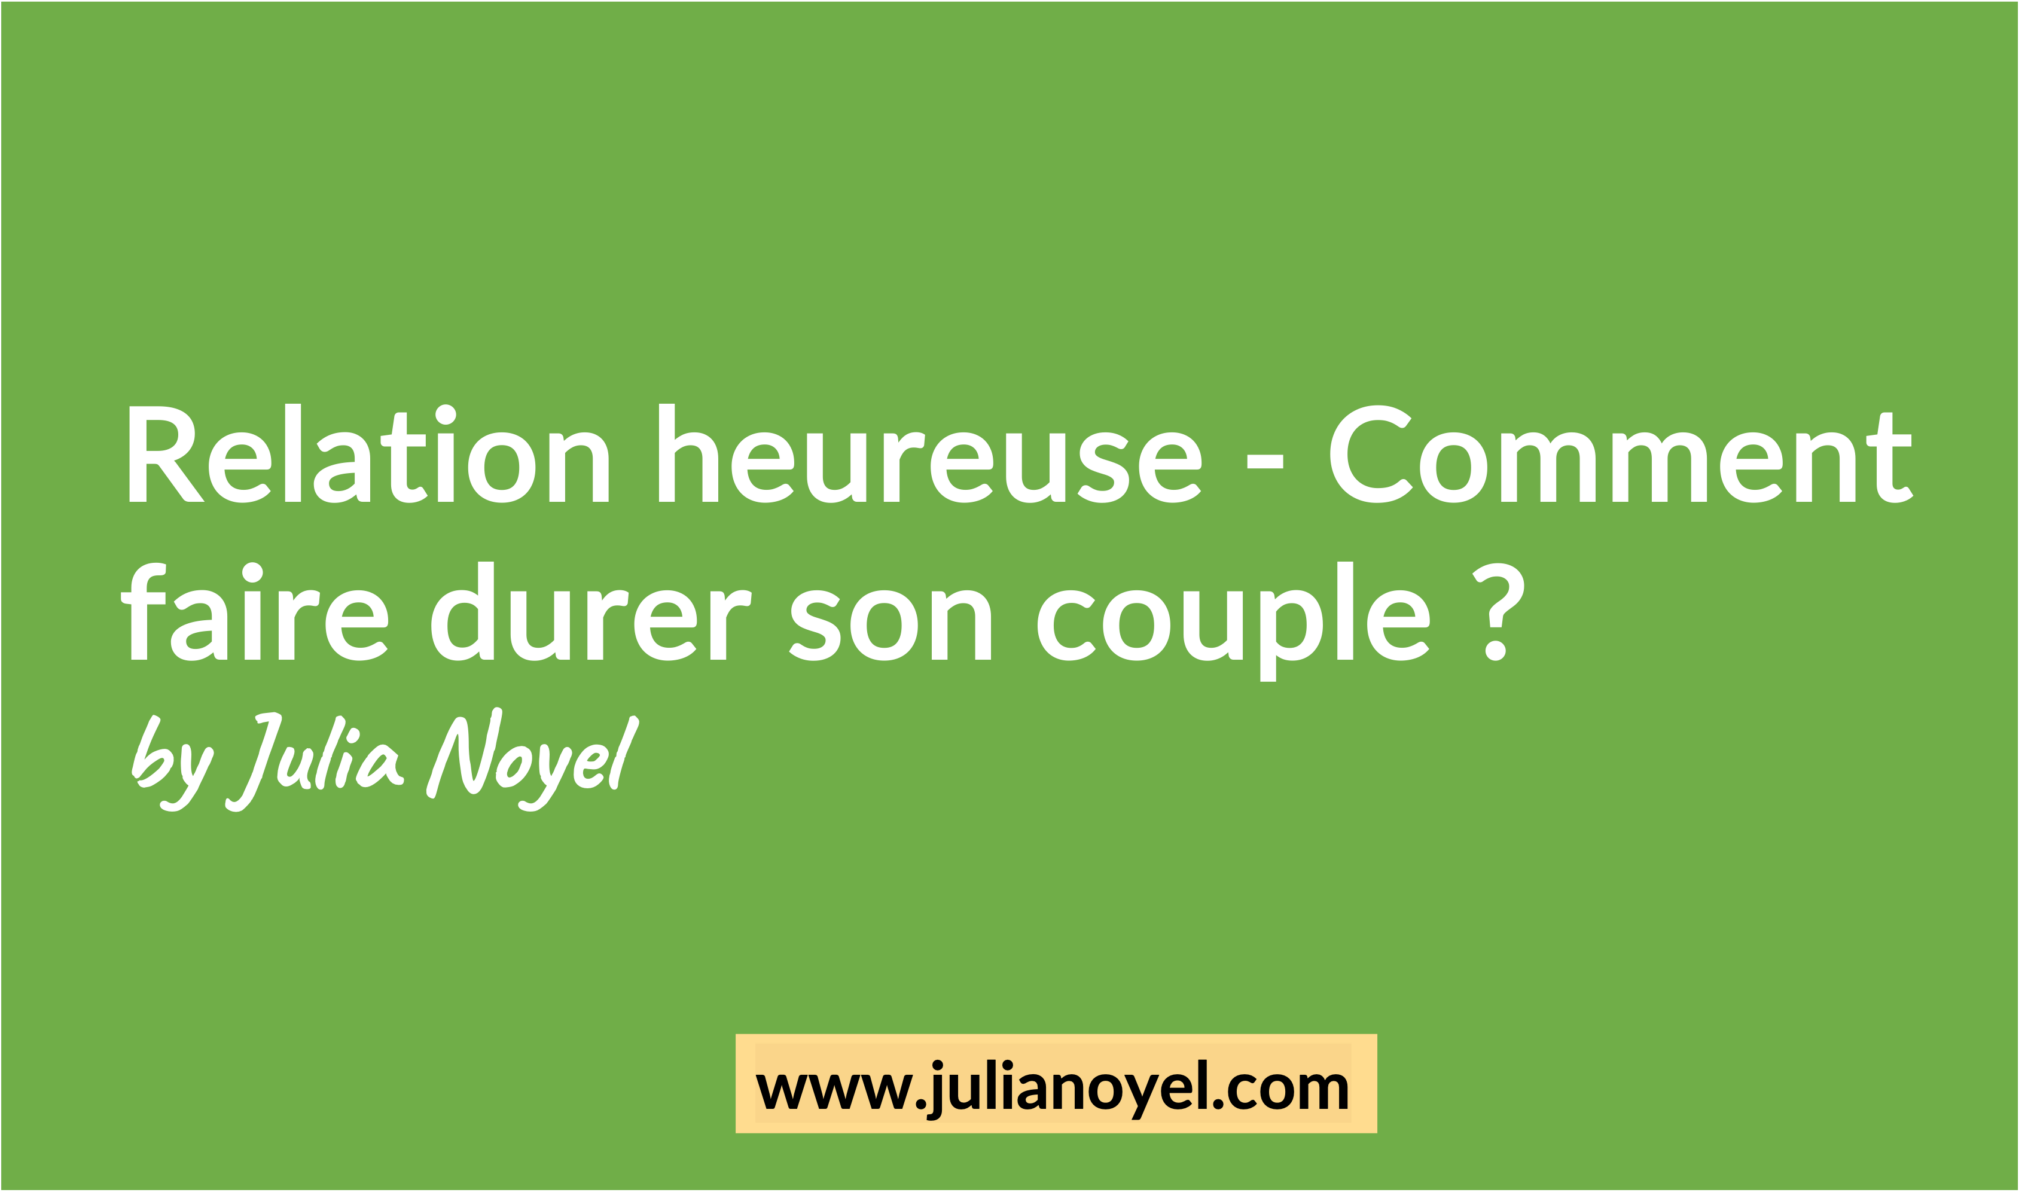 Relation heureuse - Comment faire durer son couple ? by Julia Noyel